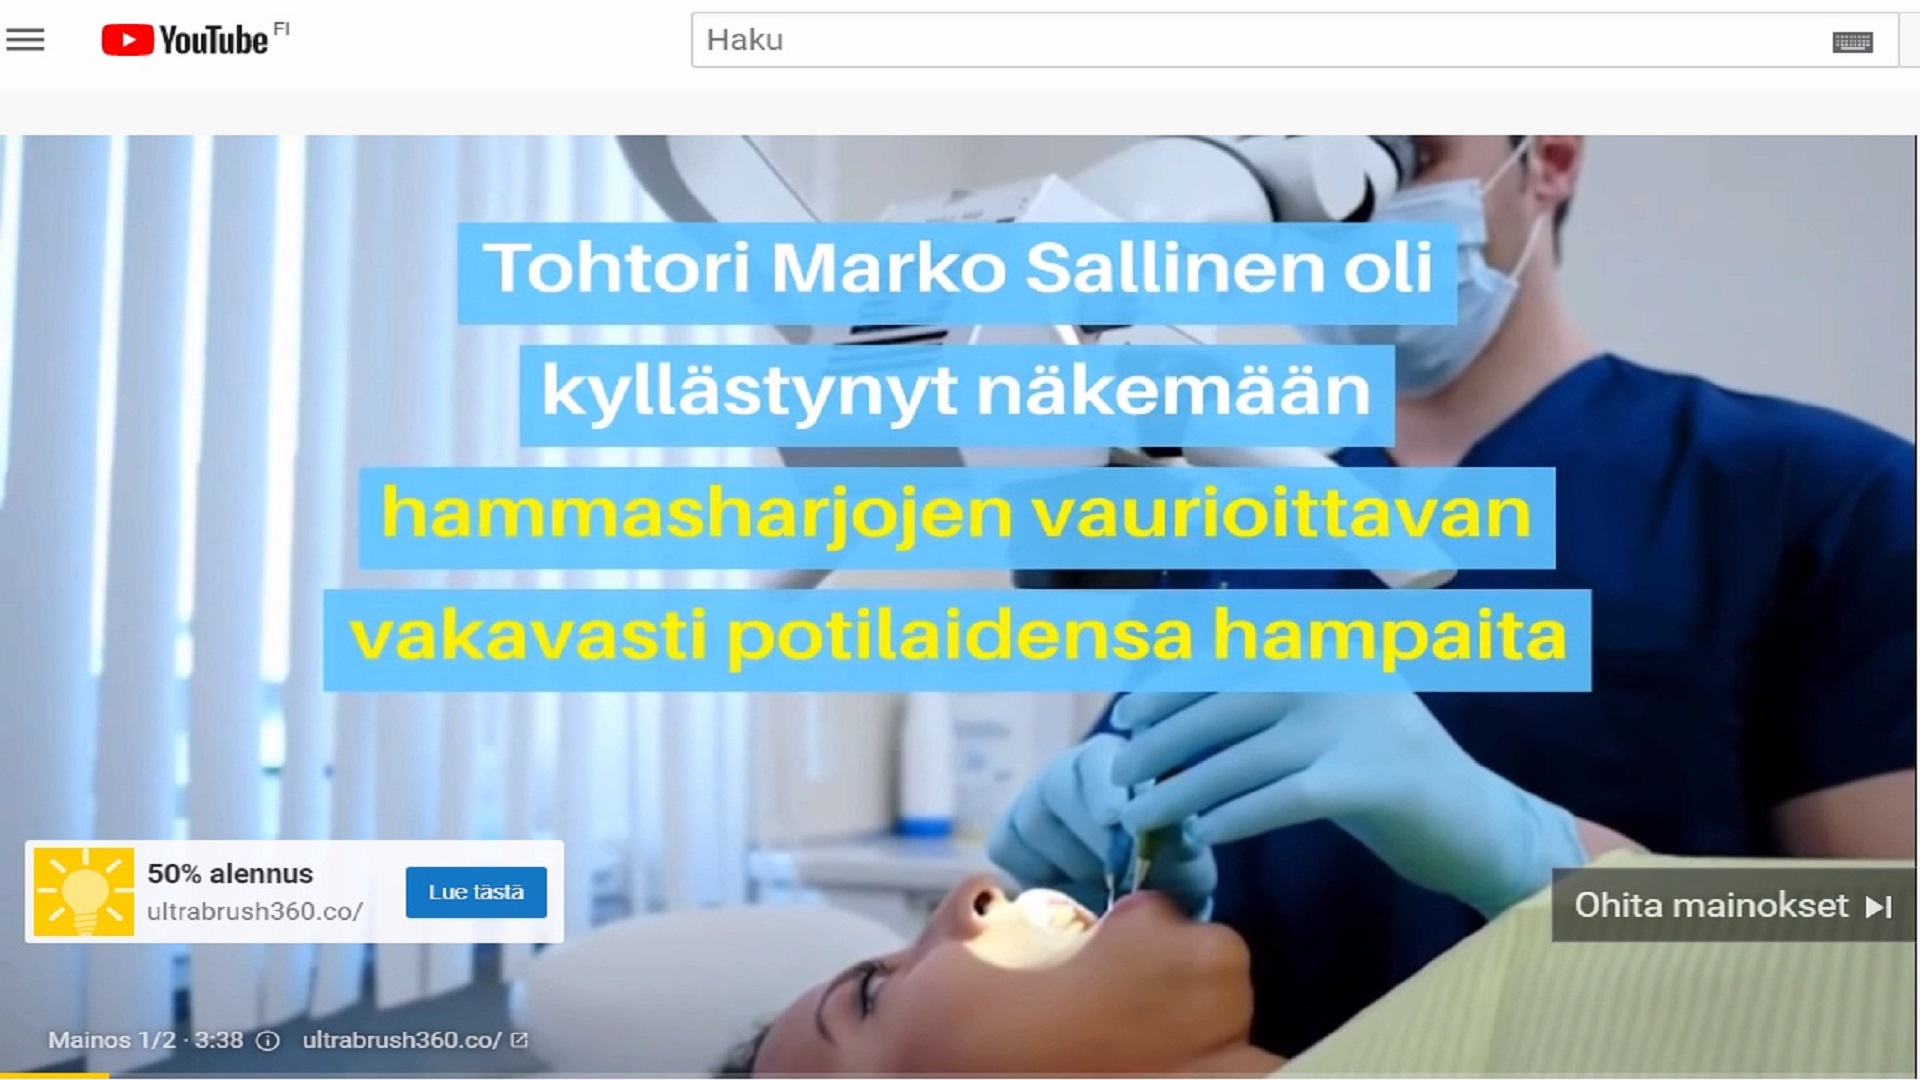 Suomalaisille mainostetaan tuotteita harhaanjohtavalla kampanjalla.